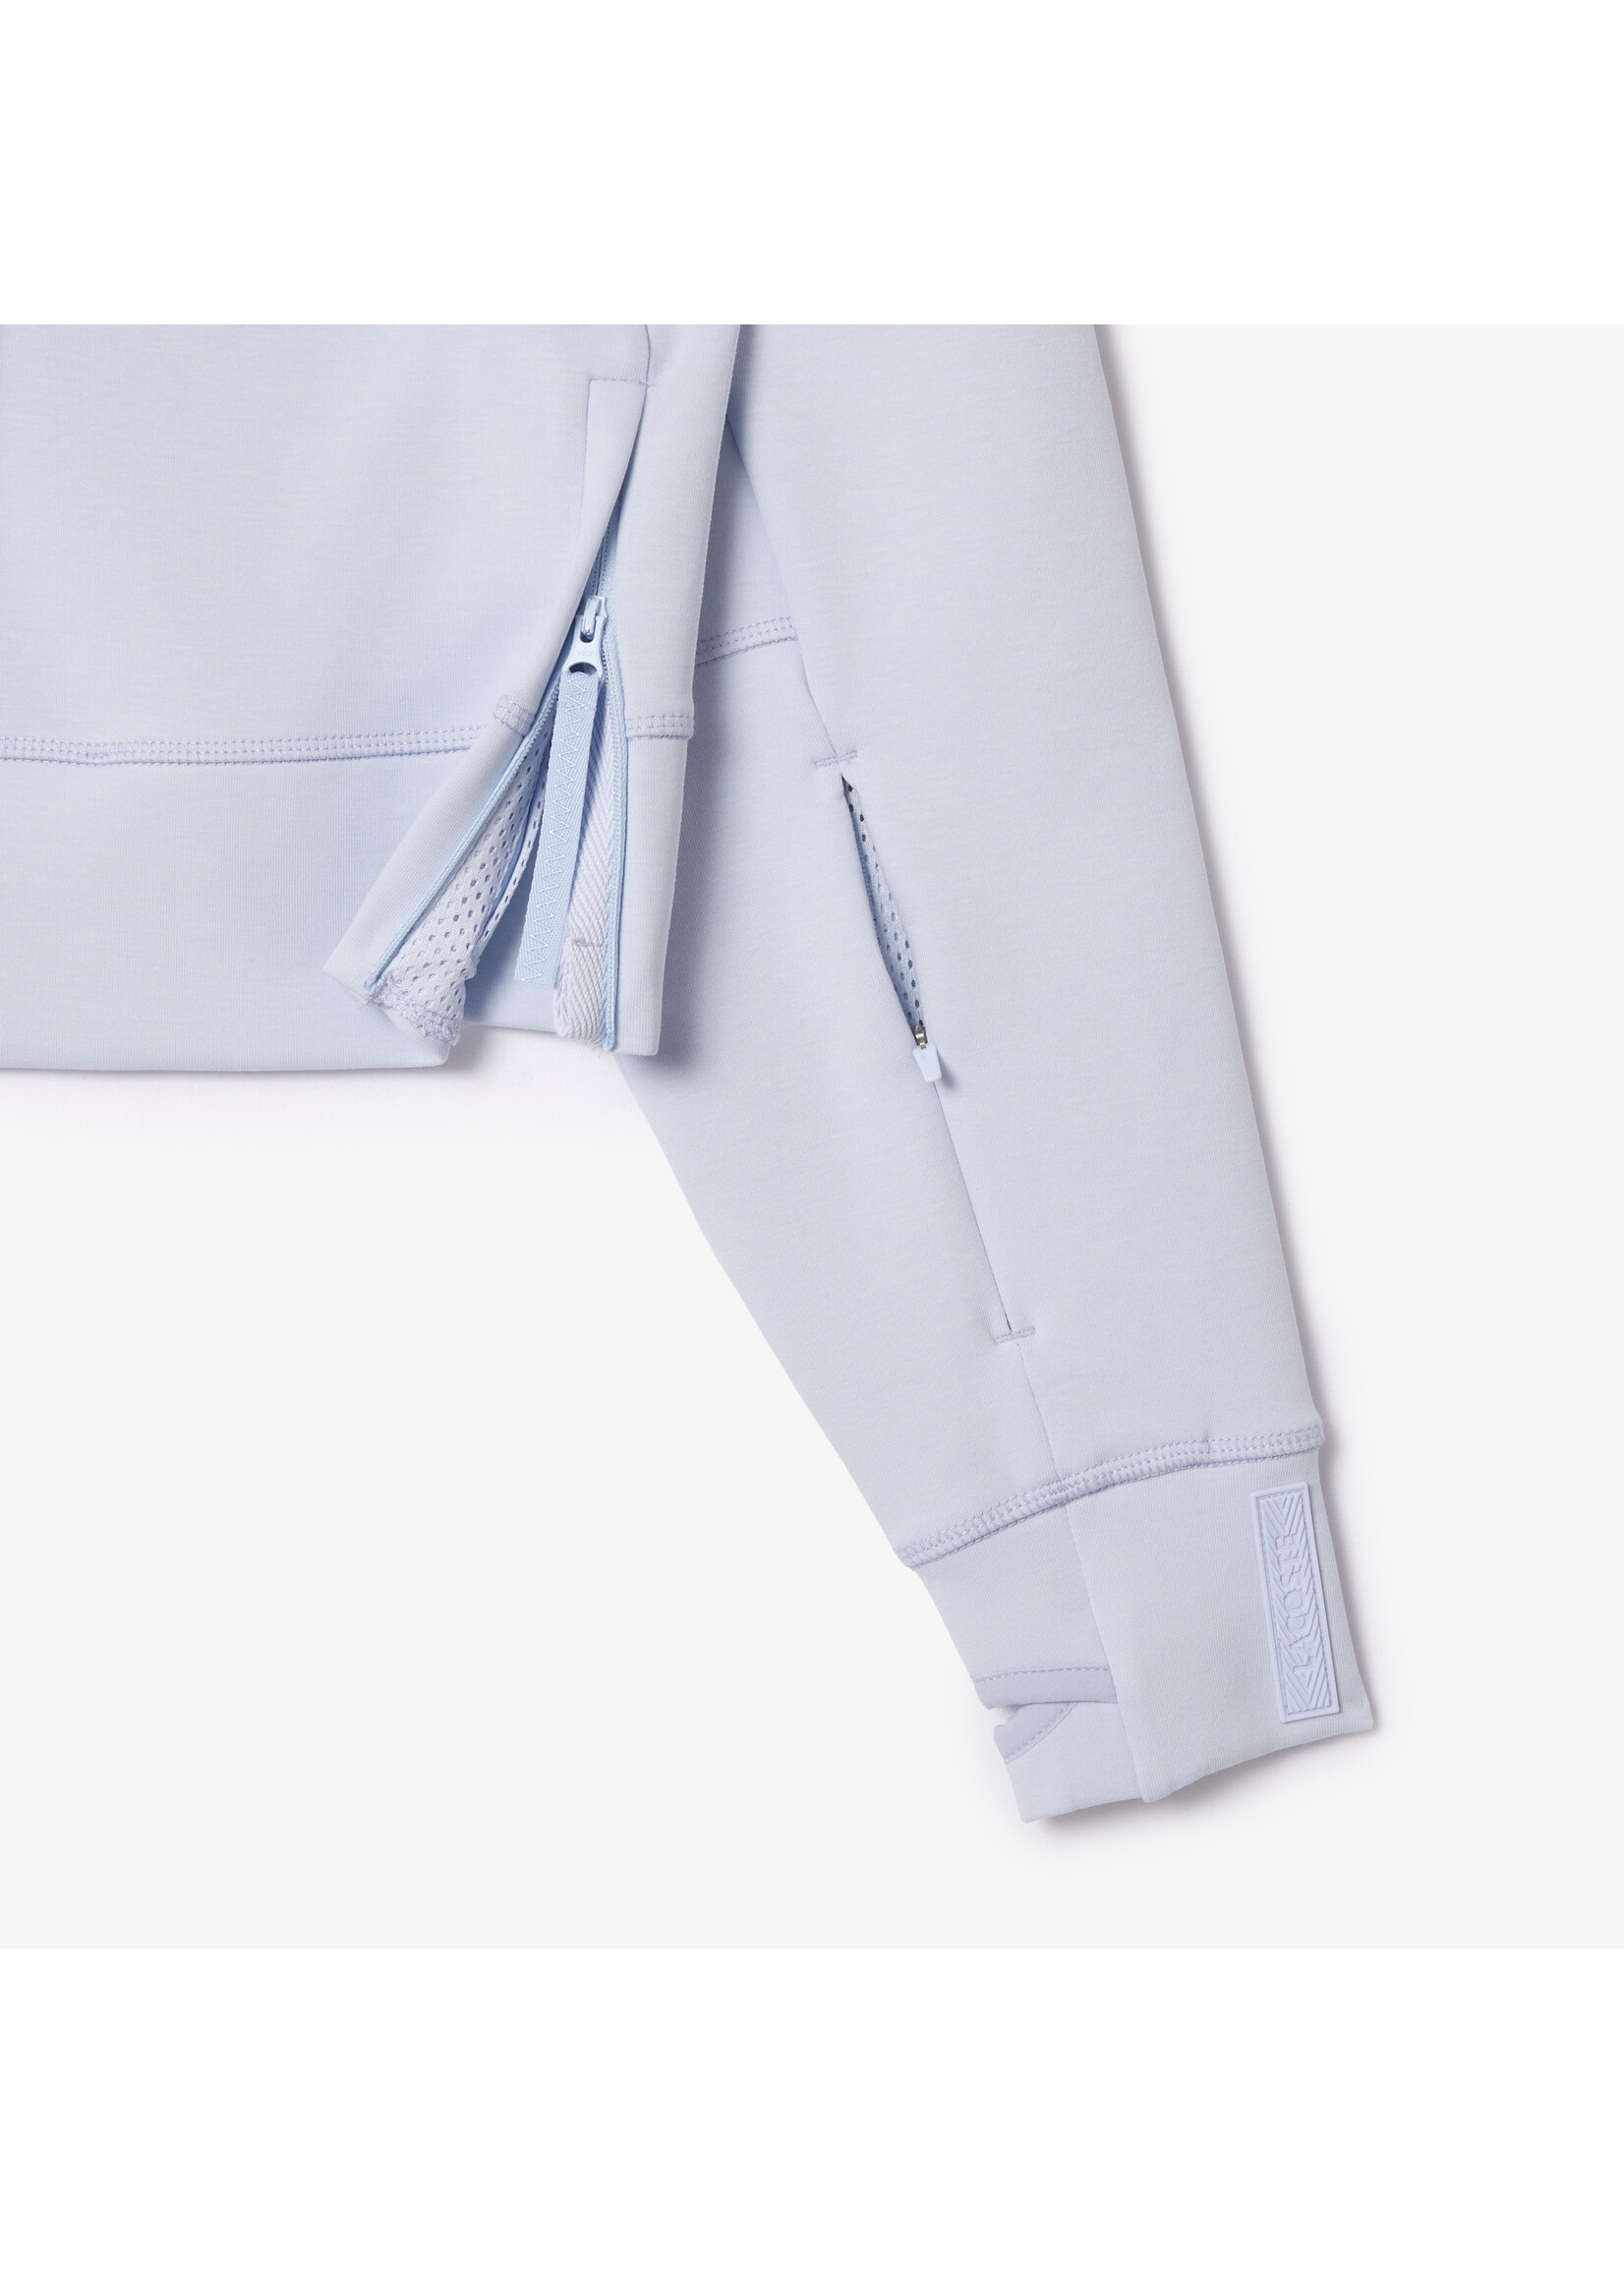 LACOSTE Sweatshirt à capuche Jogger avec passe-pouce-Bleu clair